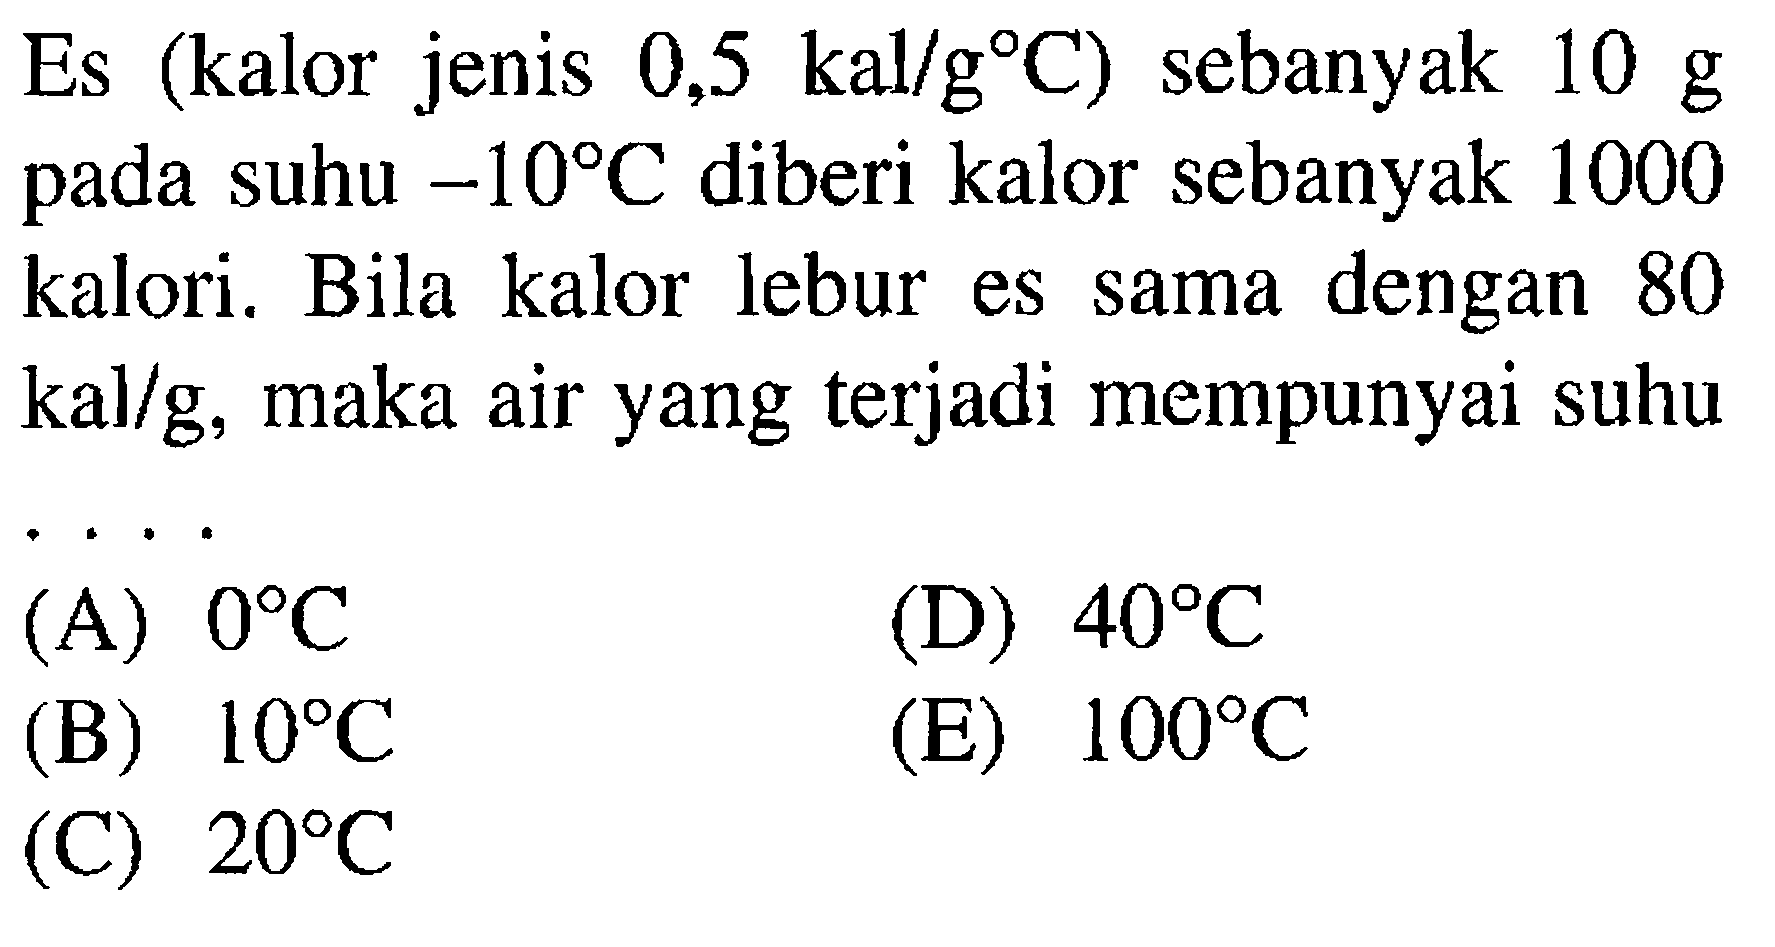 Es (kalor jenis 0,5 kal/g C) sebanyak 10 g pada suhu -10 C diberi kalor sebanyak 1000 kalori. Bila kalor lebur es sama dengan 80 kal/g, maka air yang terjadi mempunyai suhu .... 